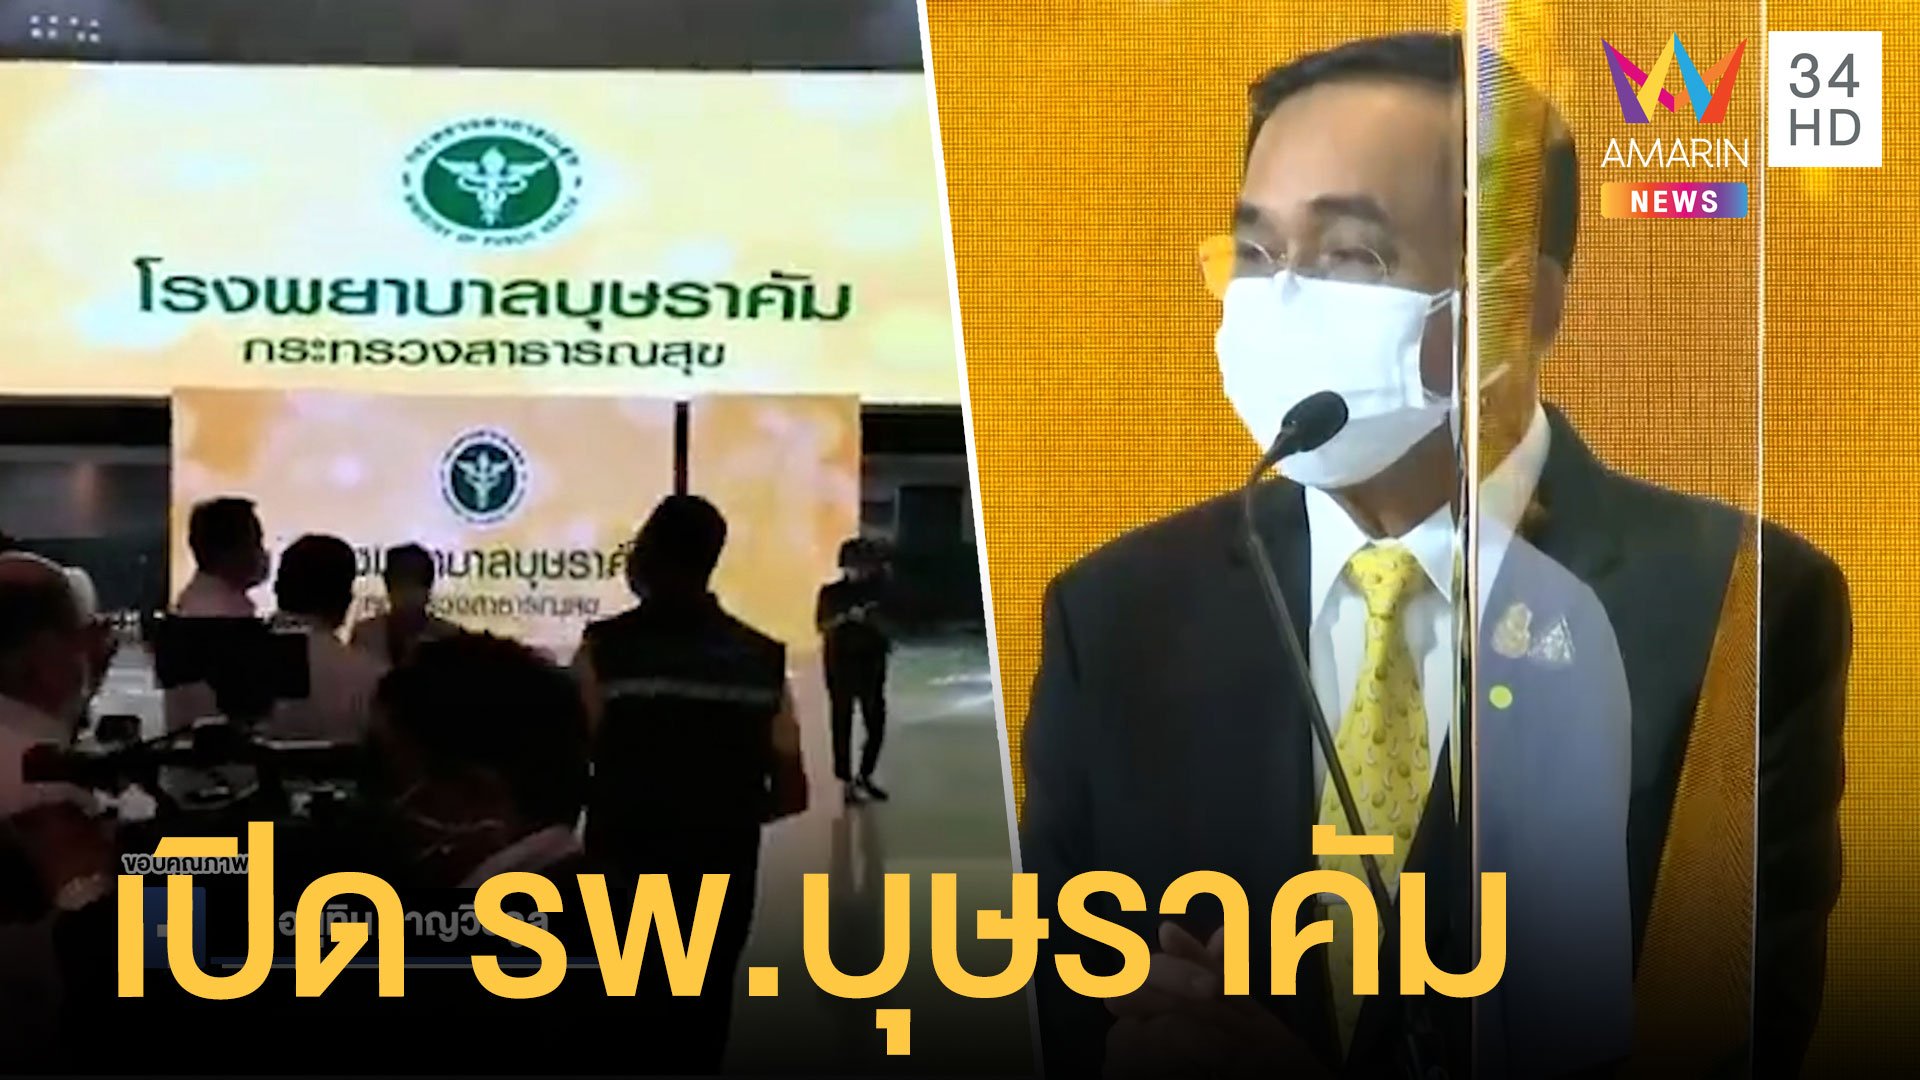 ลุงตู่เปิด รพ.บุษราคัม โรงพยาบาลสนามเมืองทอง ชวนคนไทยฉีดวัคซีน | ข่าวอรุณอมรินทร์ สุดสัปดาห์ | 15 พ.ค. 64 | AMARIN TVHD34